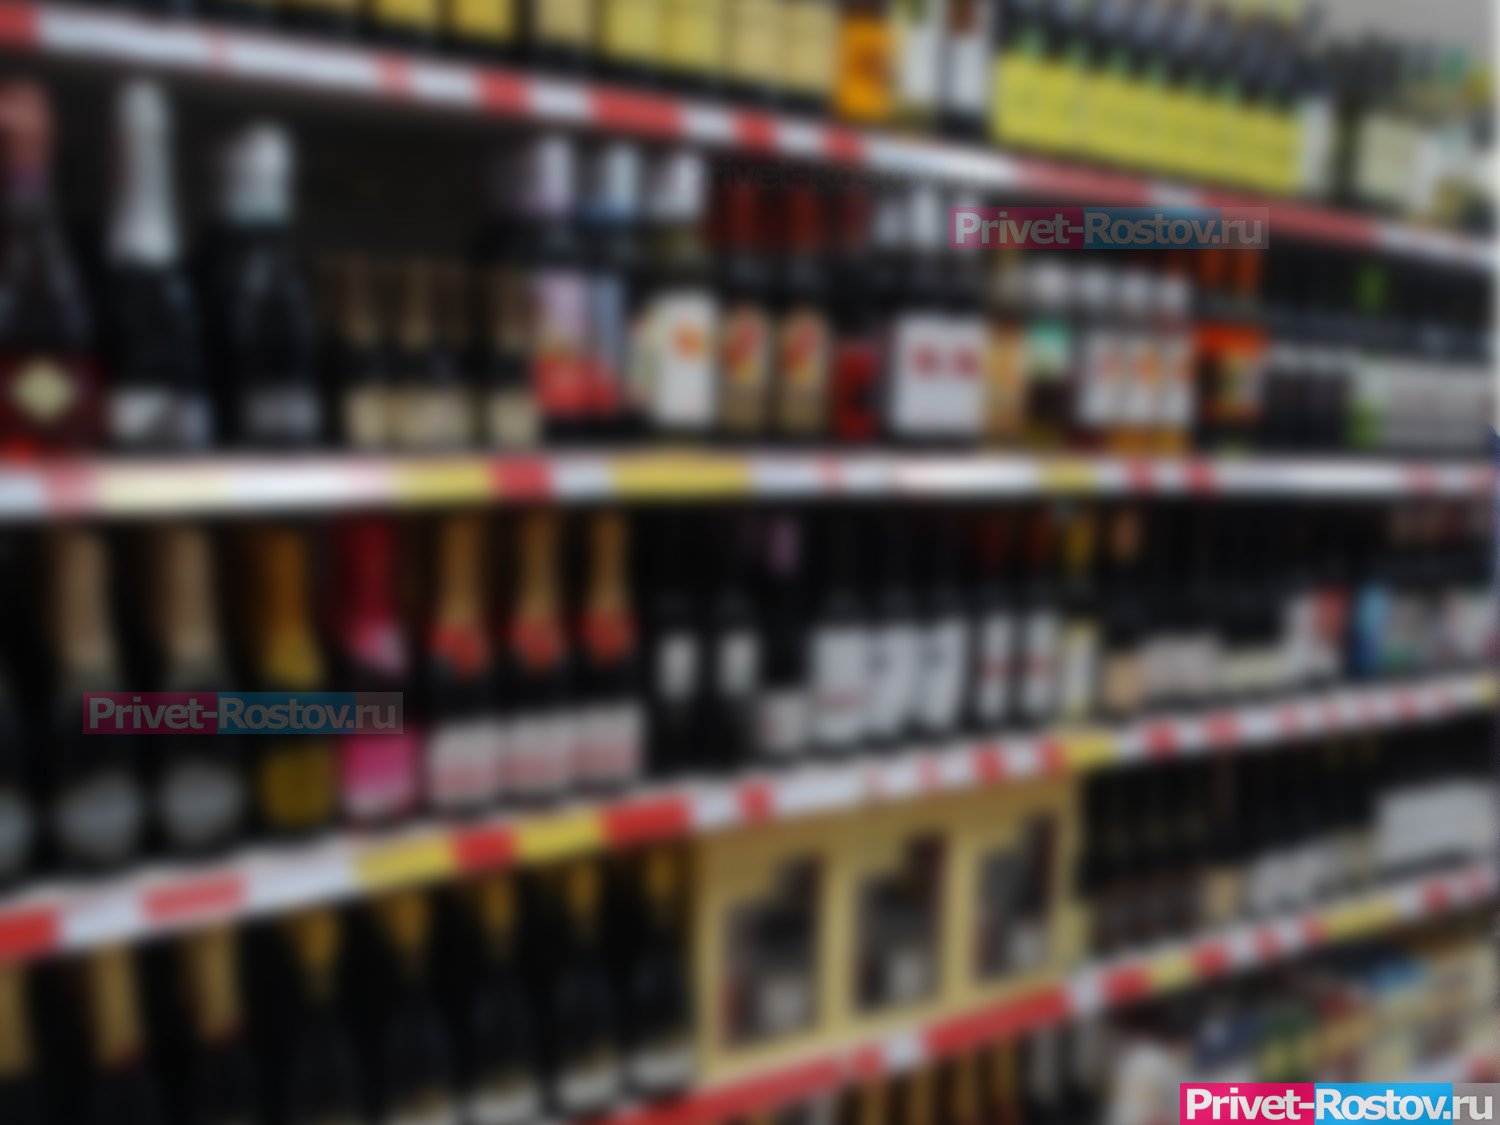 22 и 23 мая в Ростове и области из-за последних звонков запретят продажу алкоголя